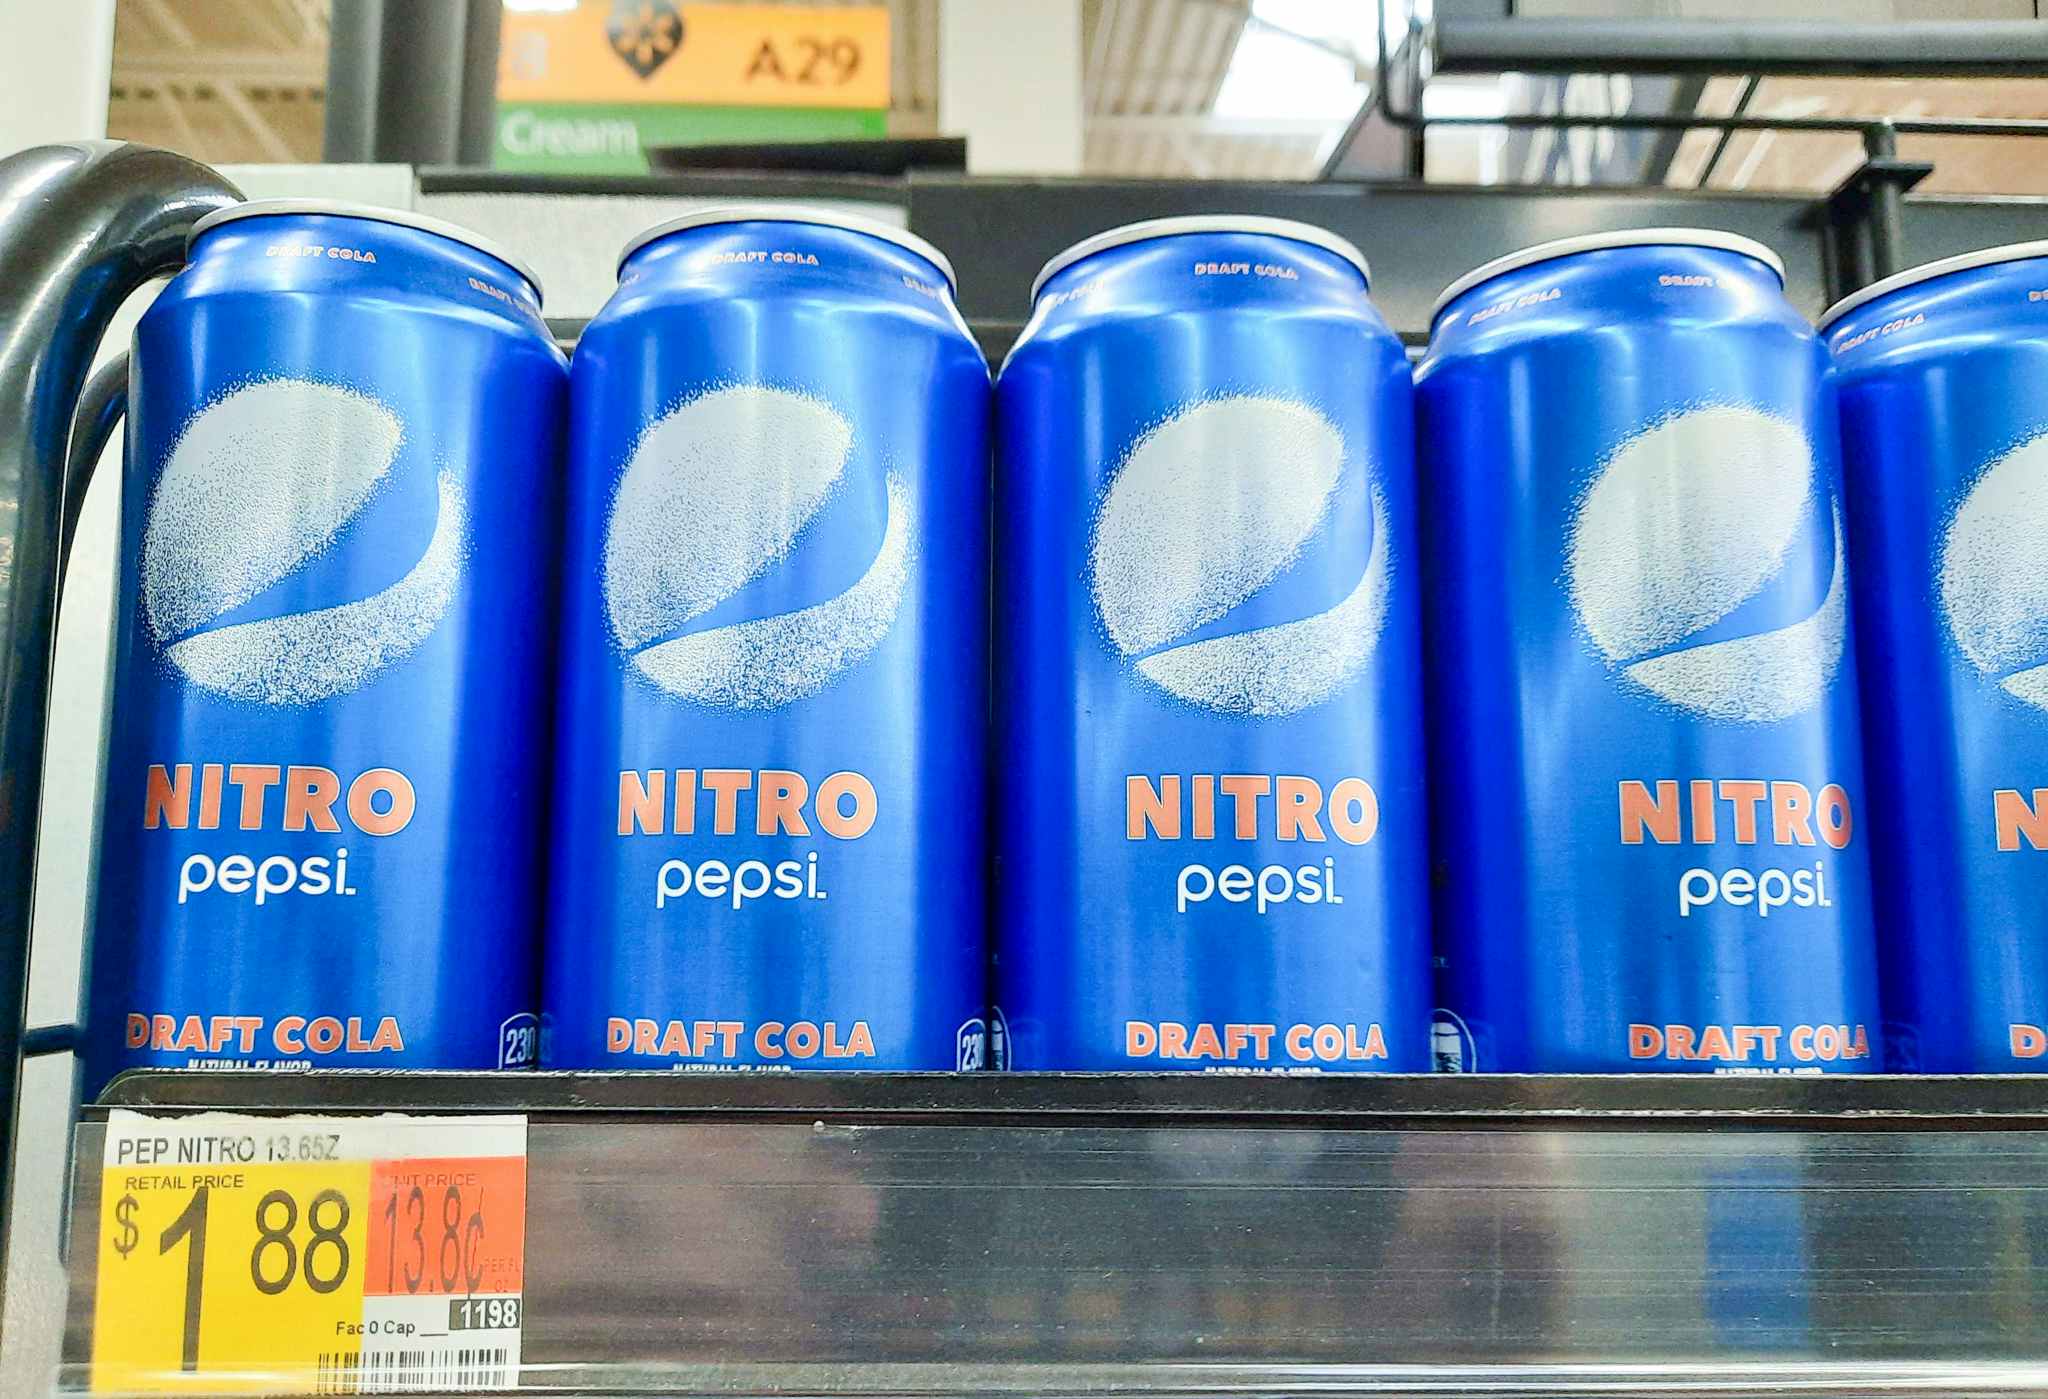 Pepsi Nitro at Walmart